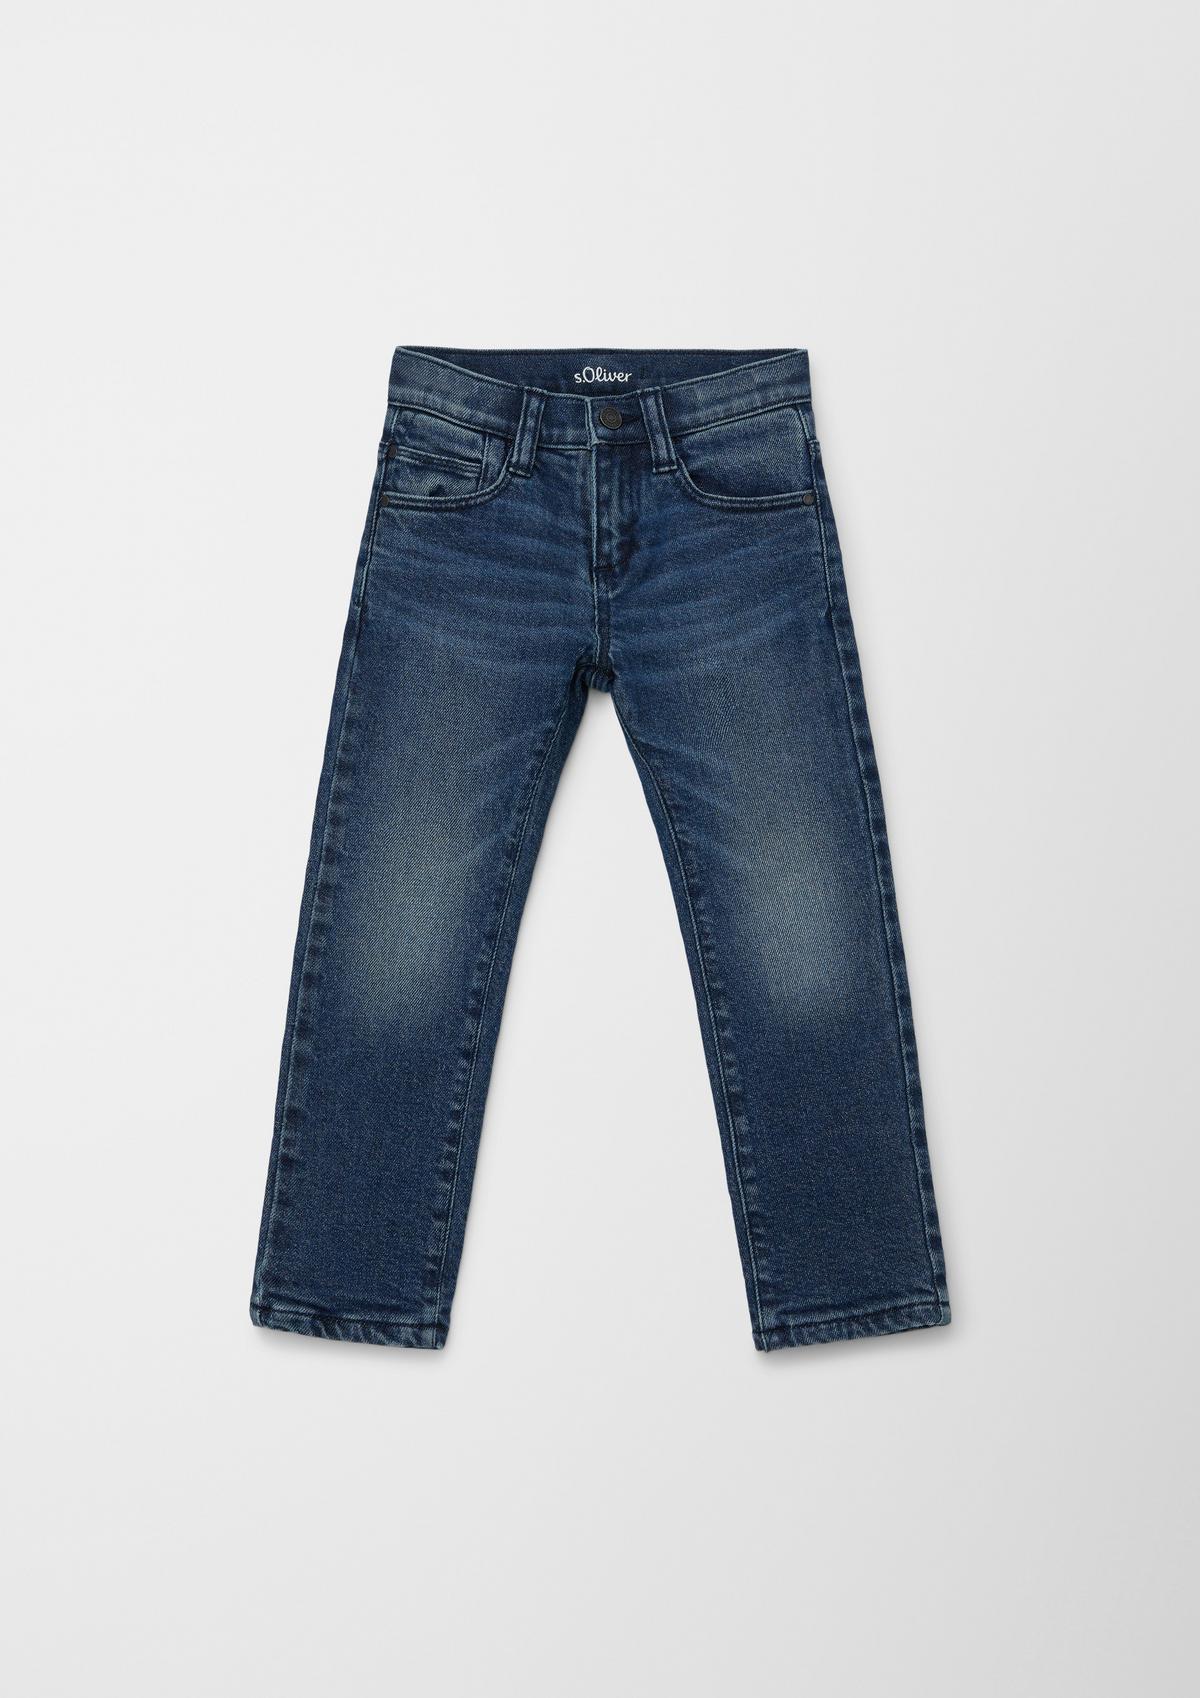 Gefütterte Jeans Pelle / Regular Fit / Mid Rise / Straight Leg